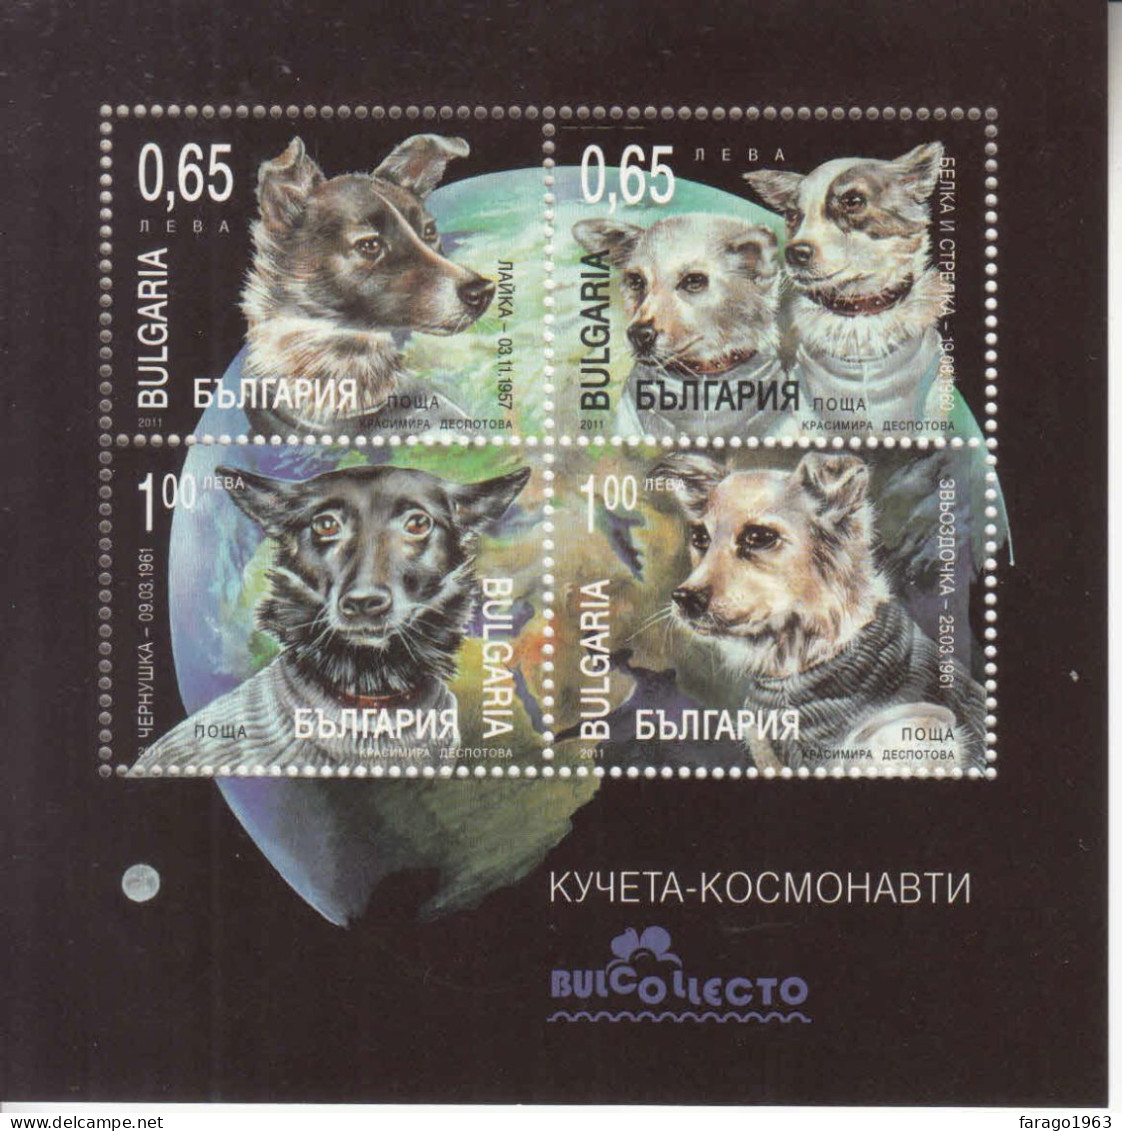 2011 Bulgaria Dogs In Space Souvenir Sheet MNH - Nuevos